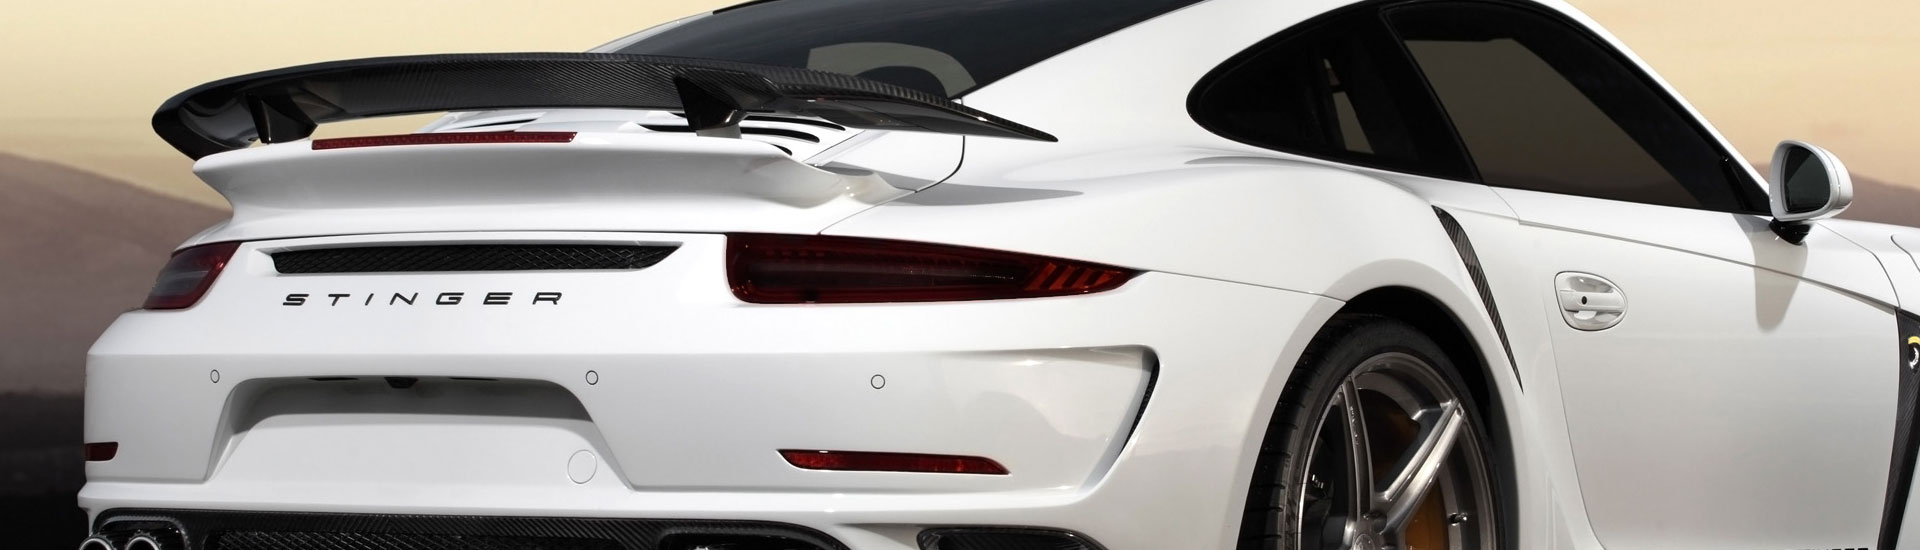 Porsche Tail Light Tint Covers